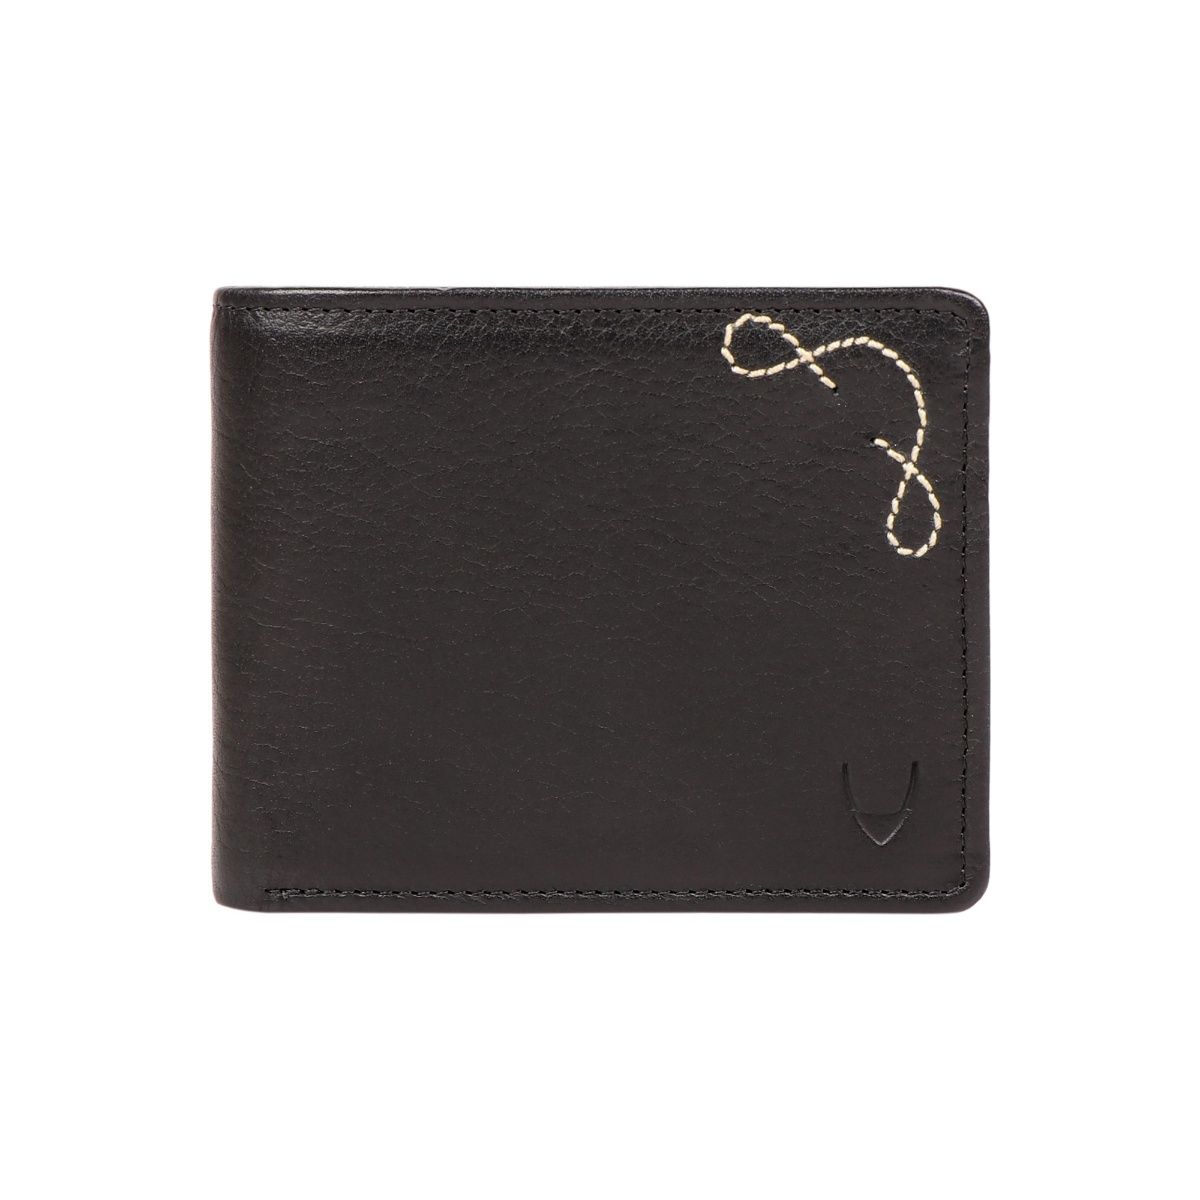 Buy Brown 278-490 Bi-Fold Wallet Online - Hidesign